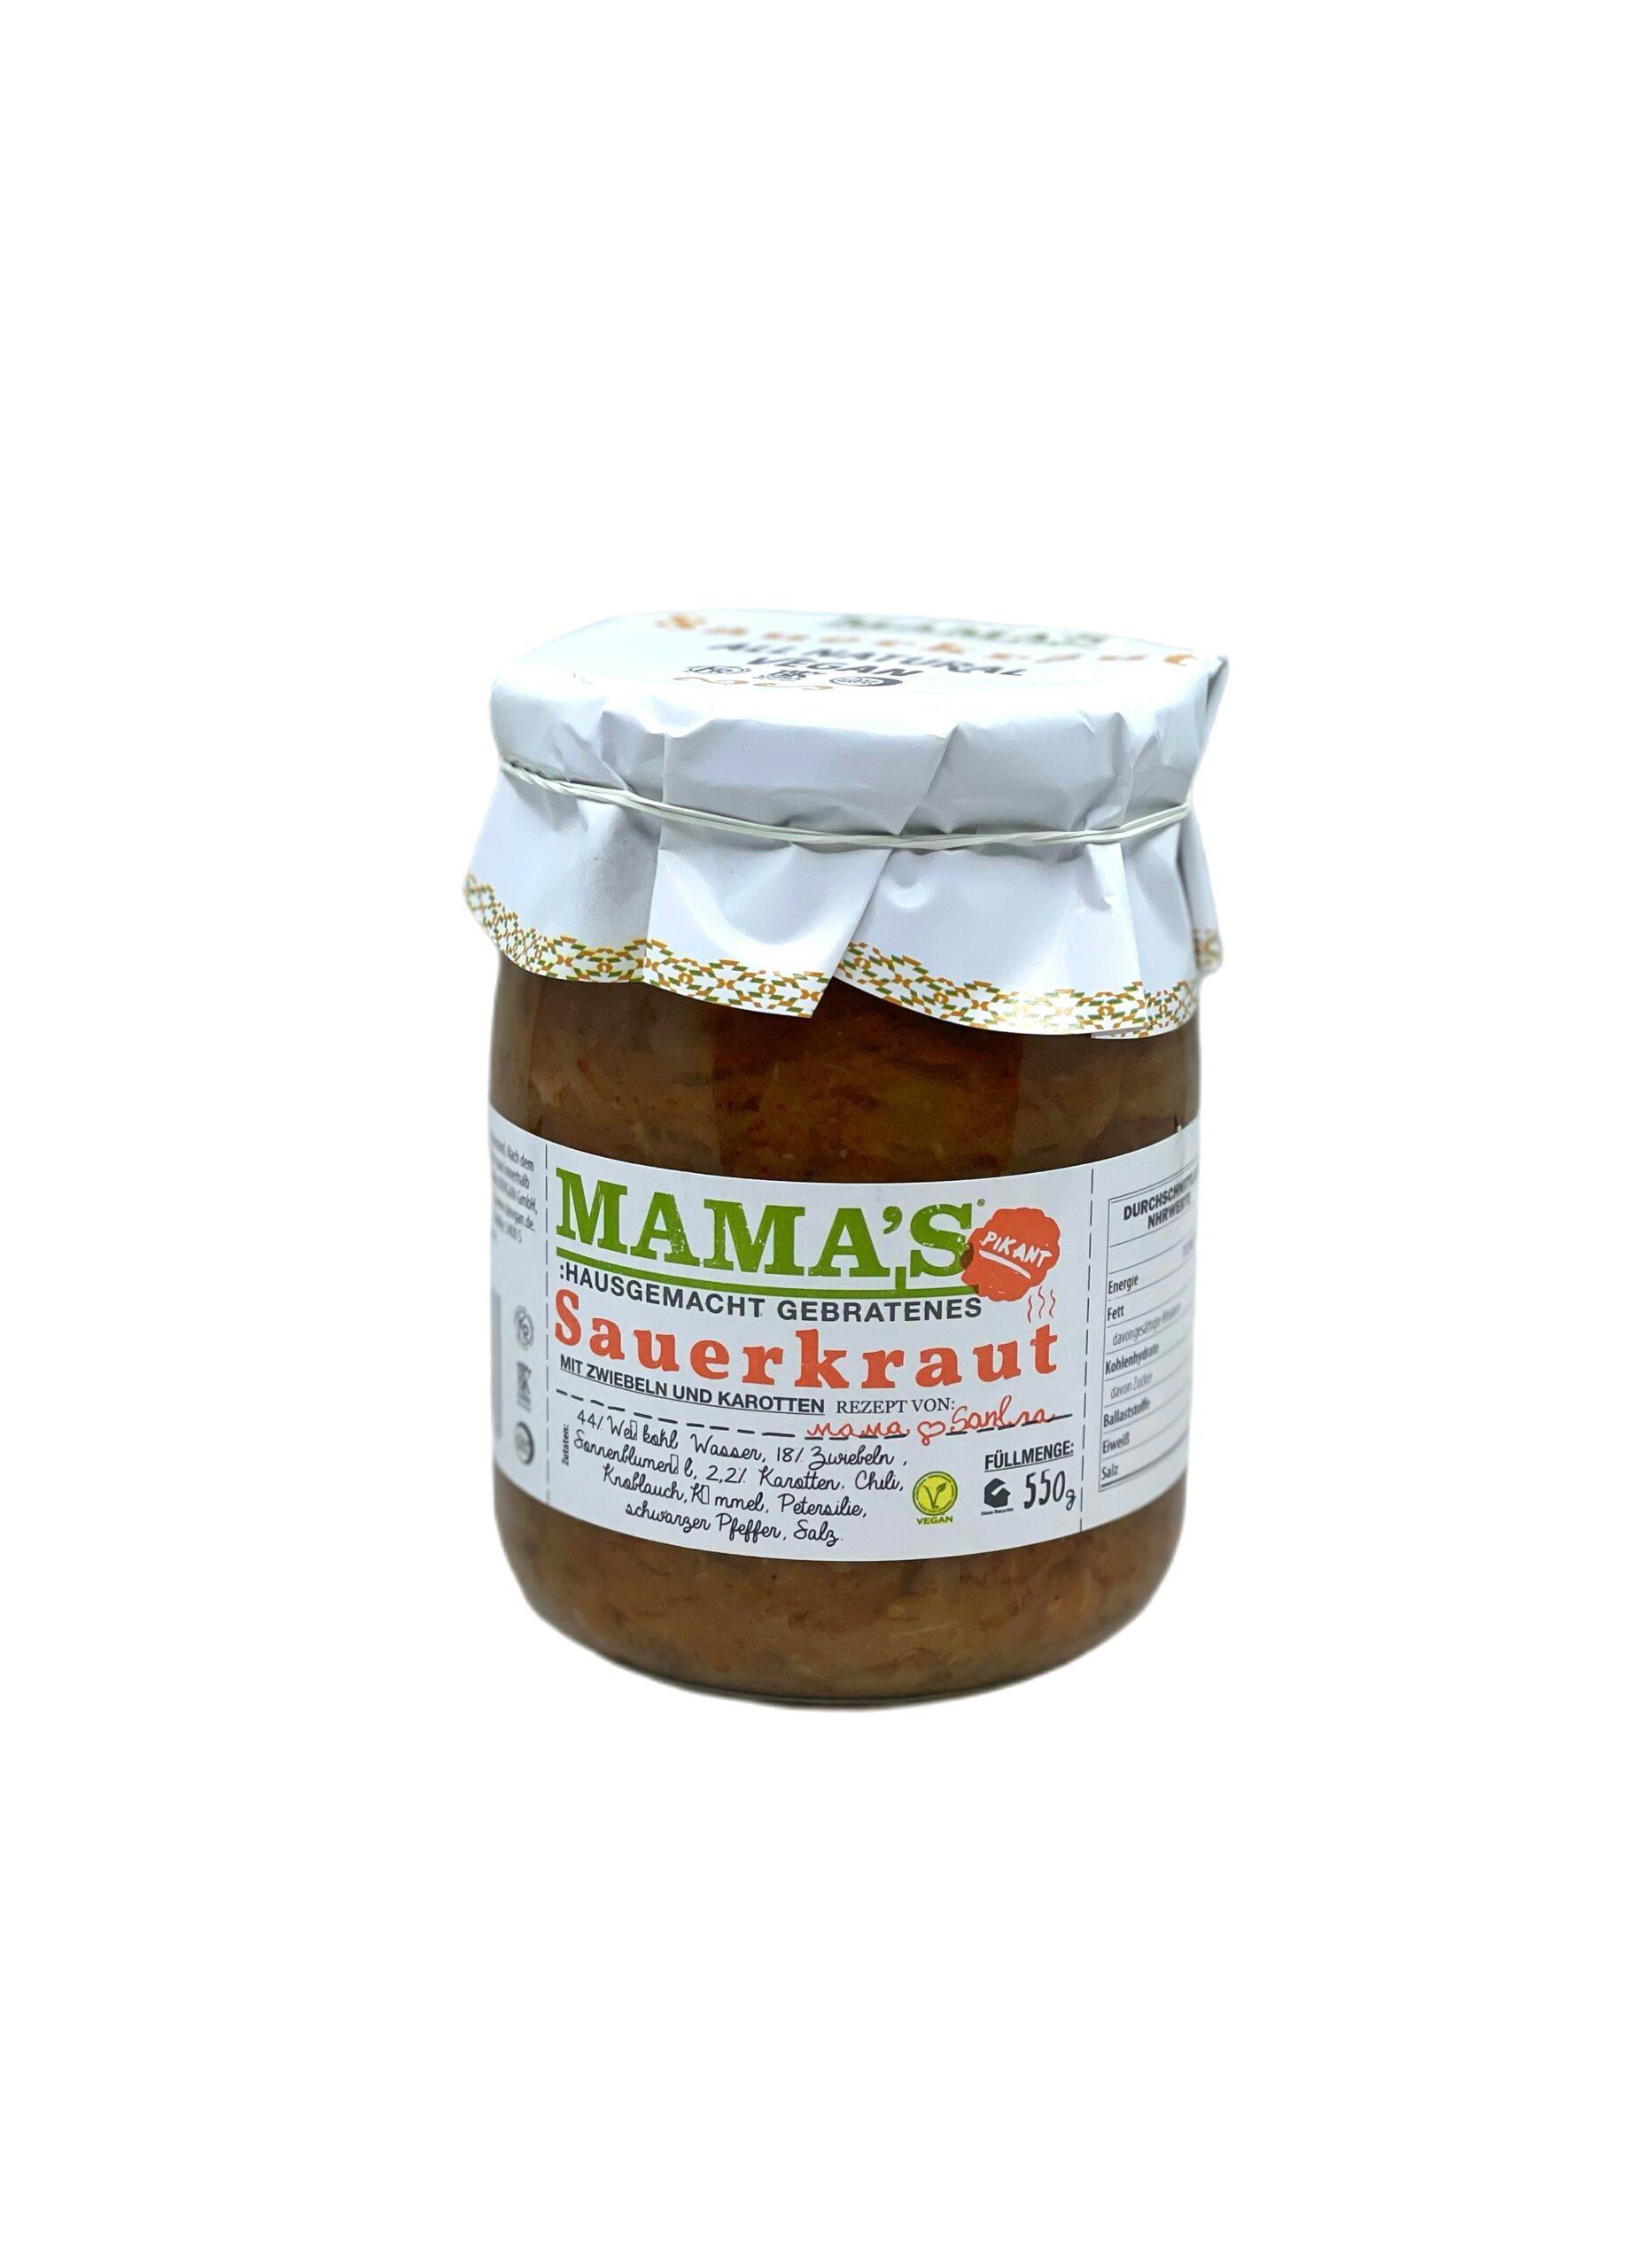 MAMA'S Fried Sauerkraut mit Gemüse 500g